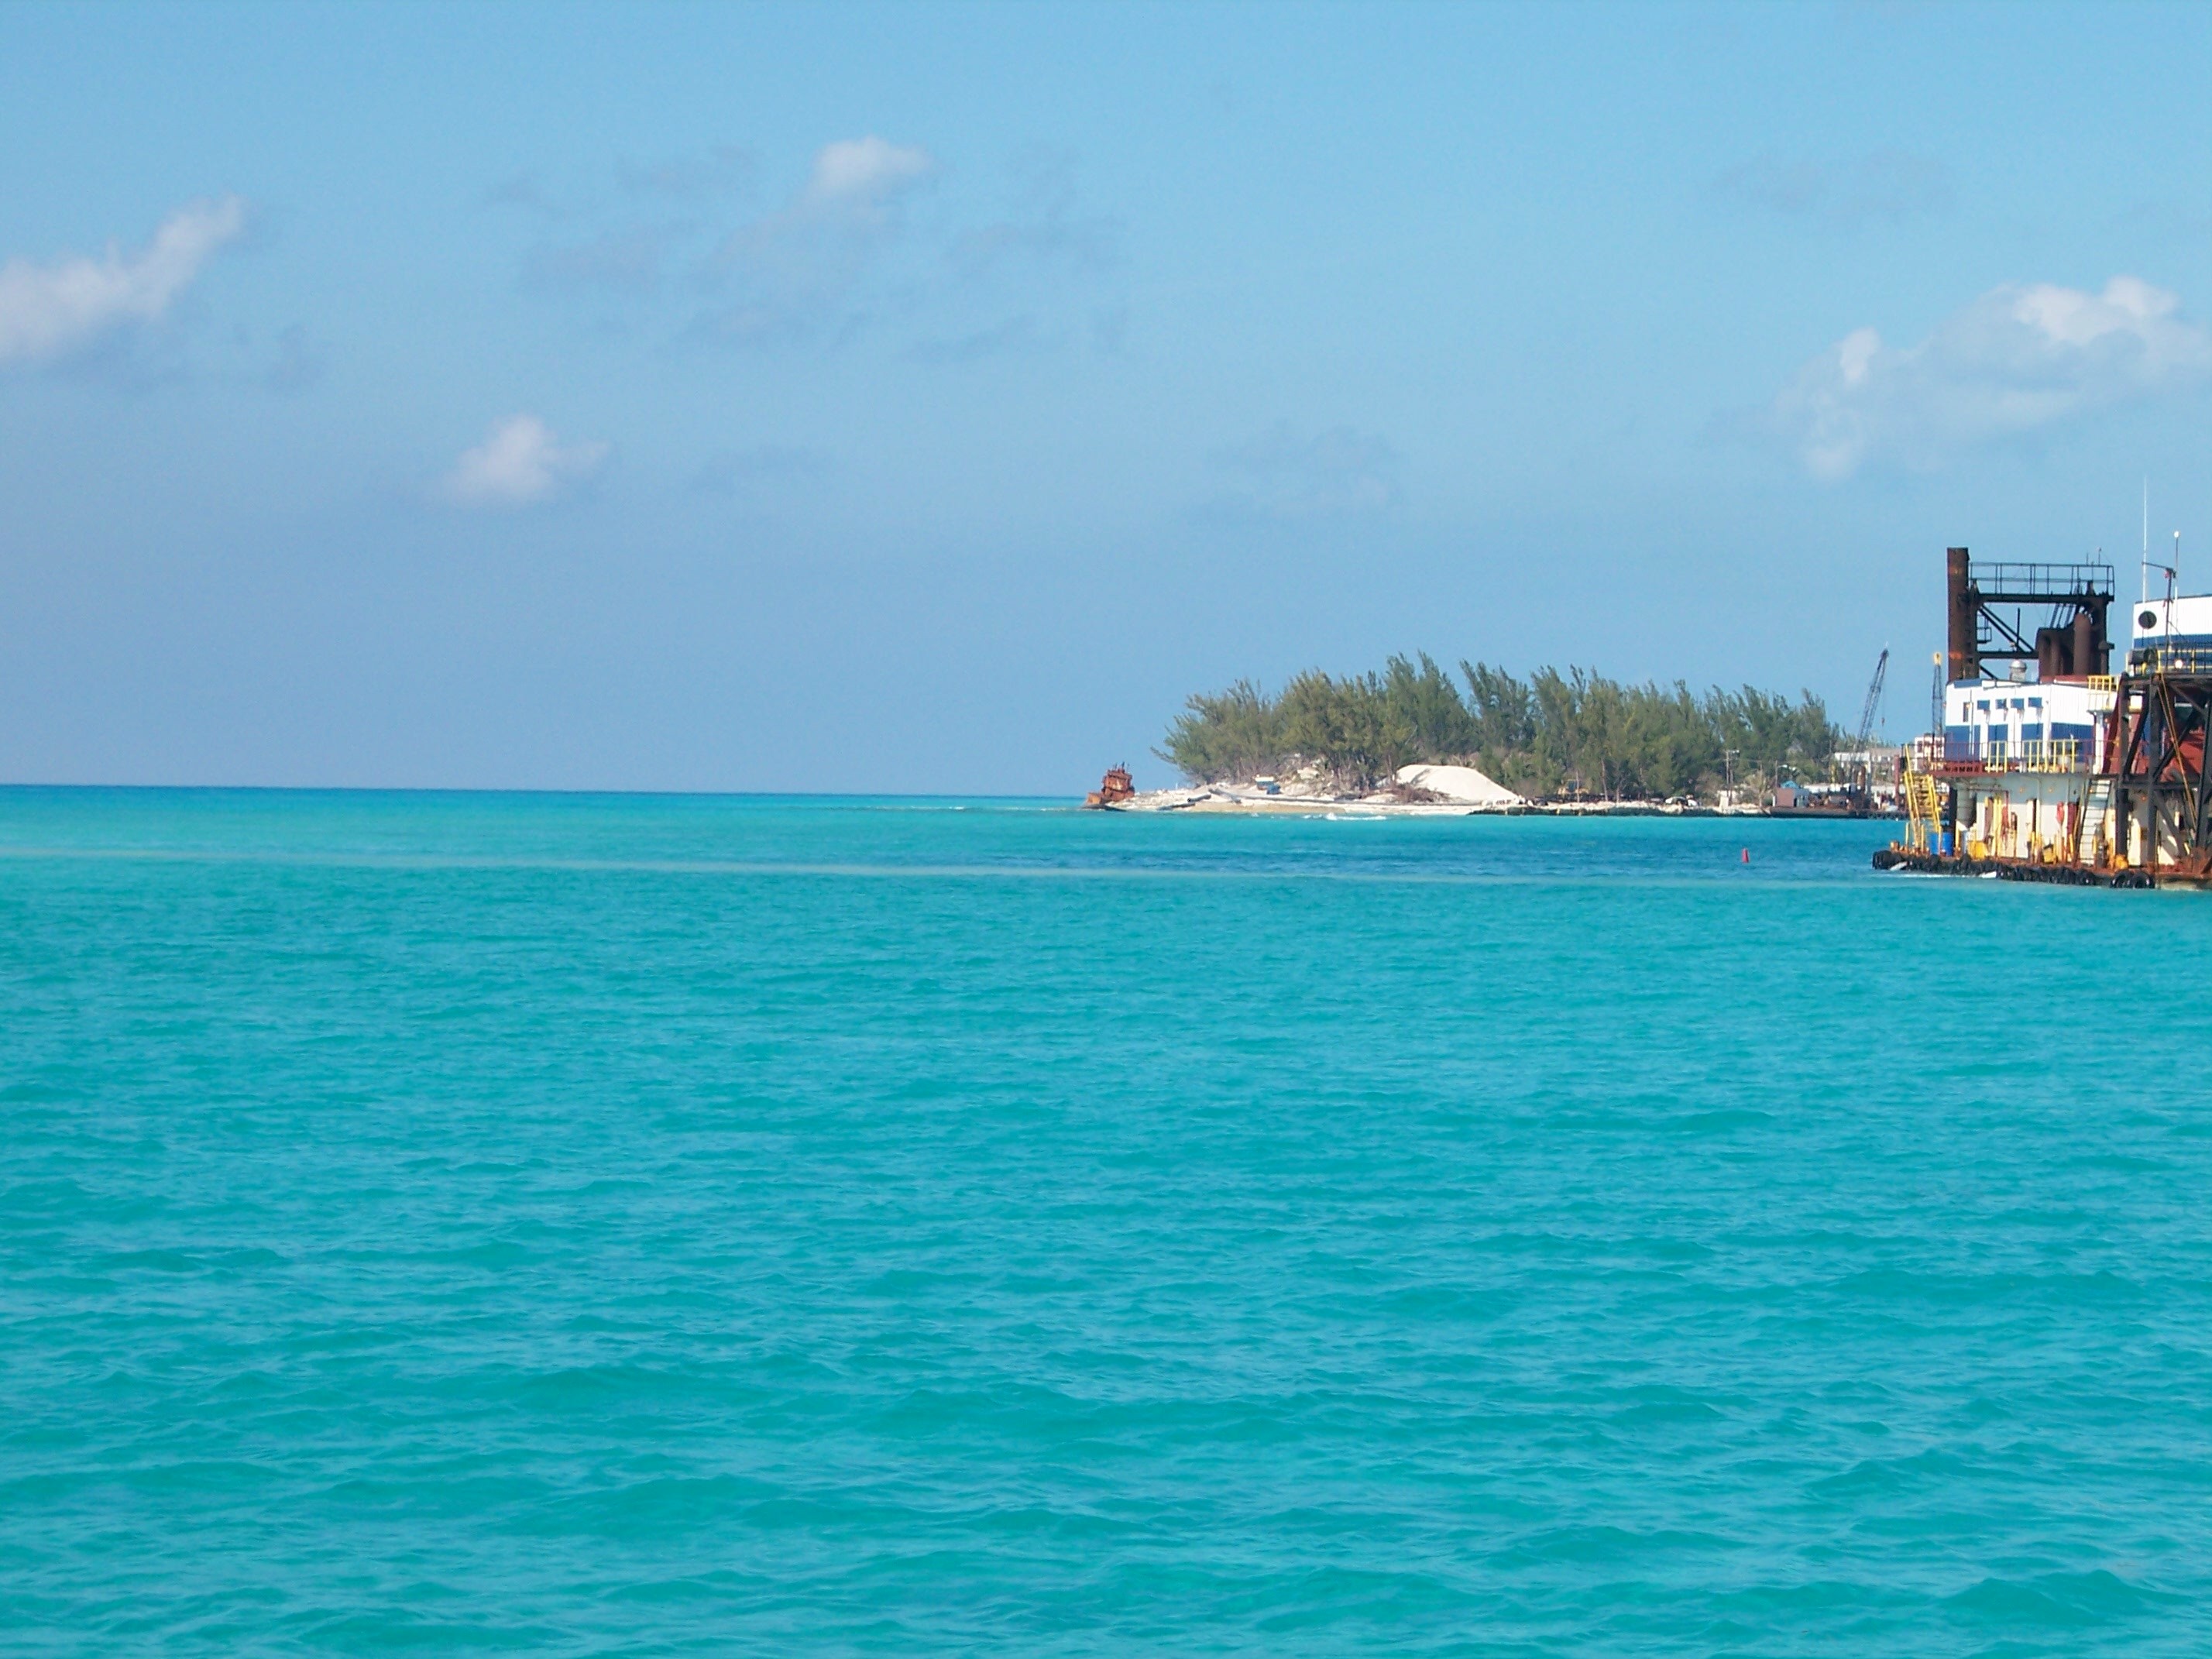 Bahamas - February 2006